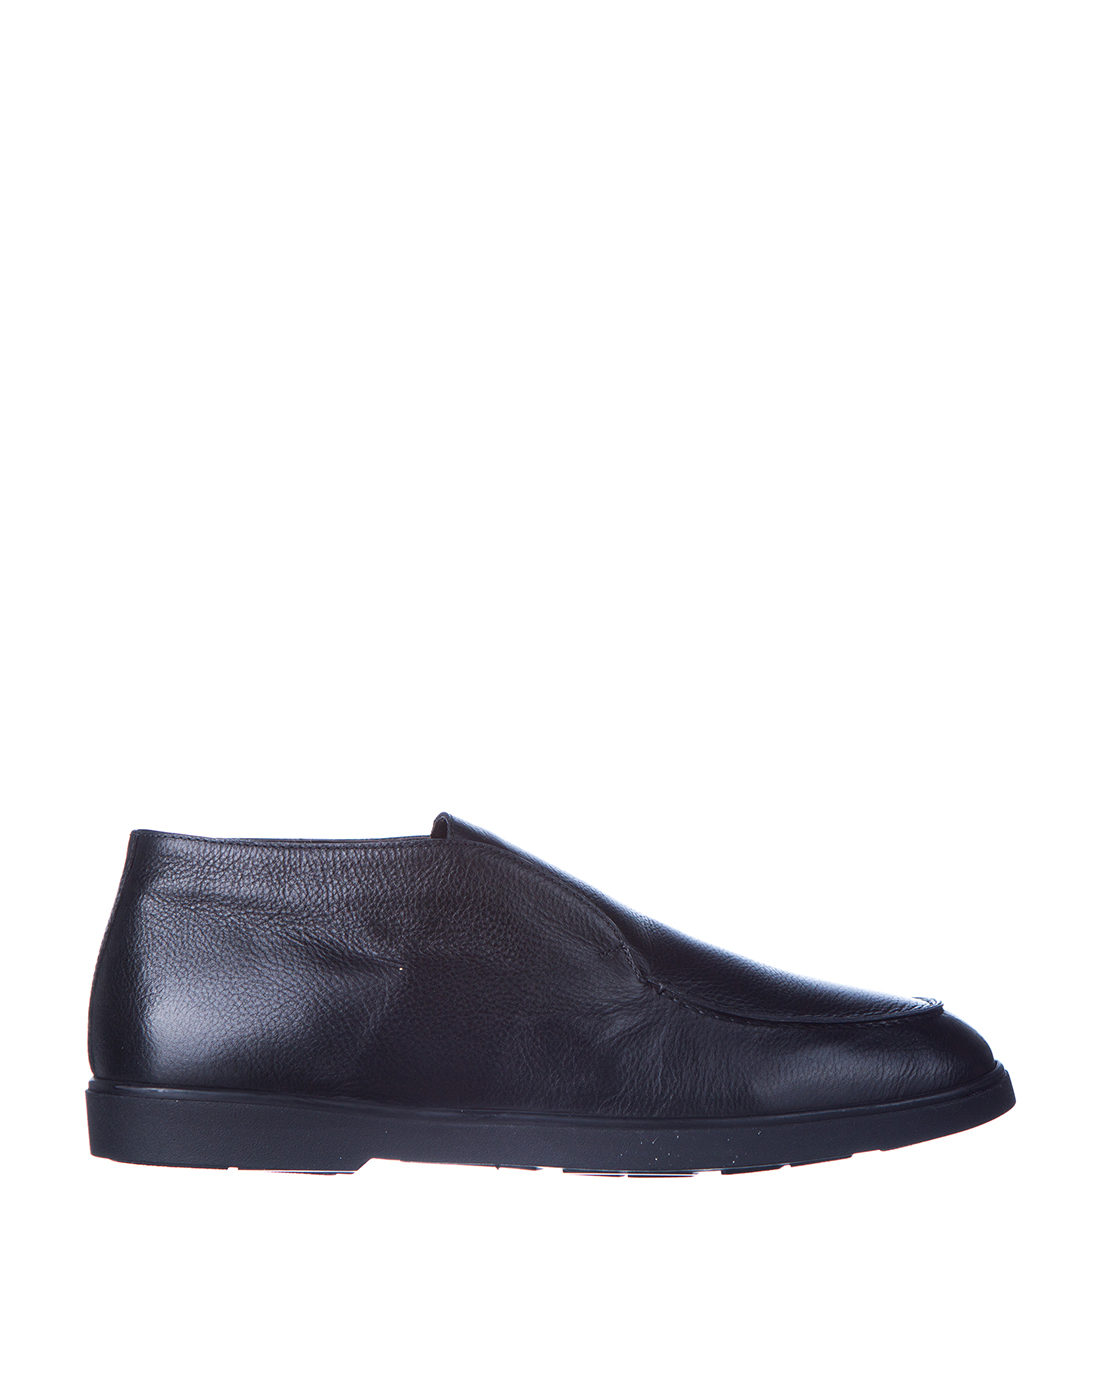 Туфли черные мужские  Brecos S9778 BLACK-1